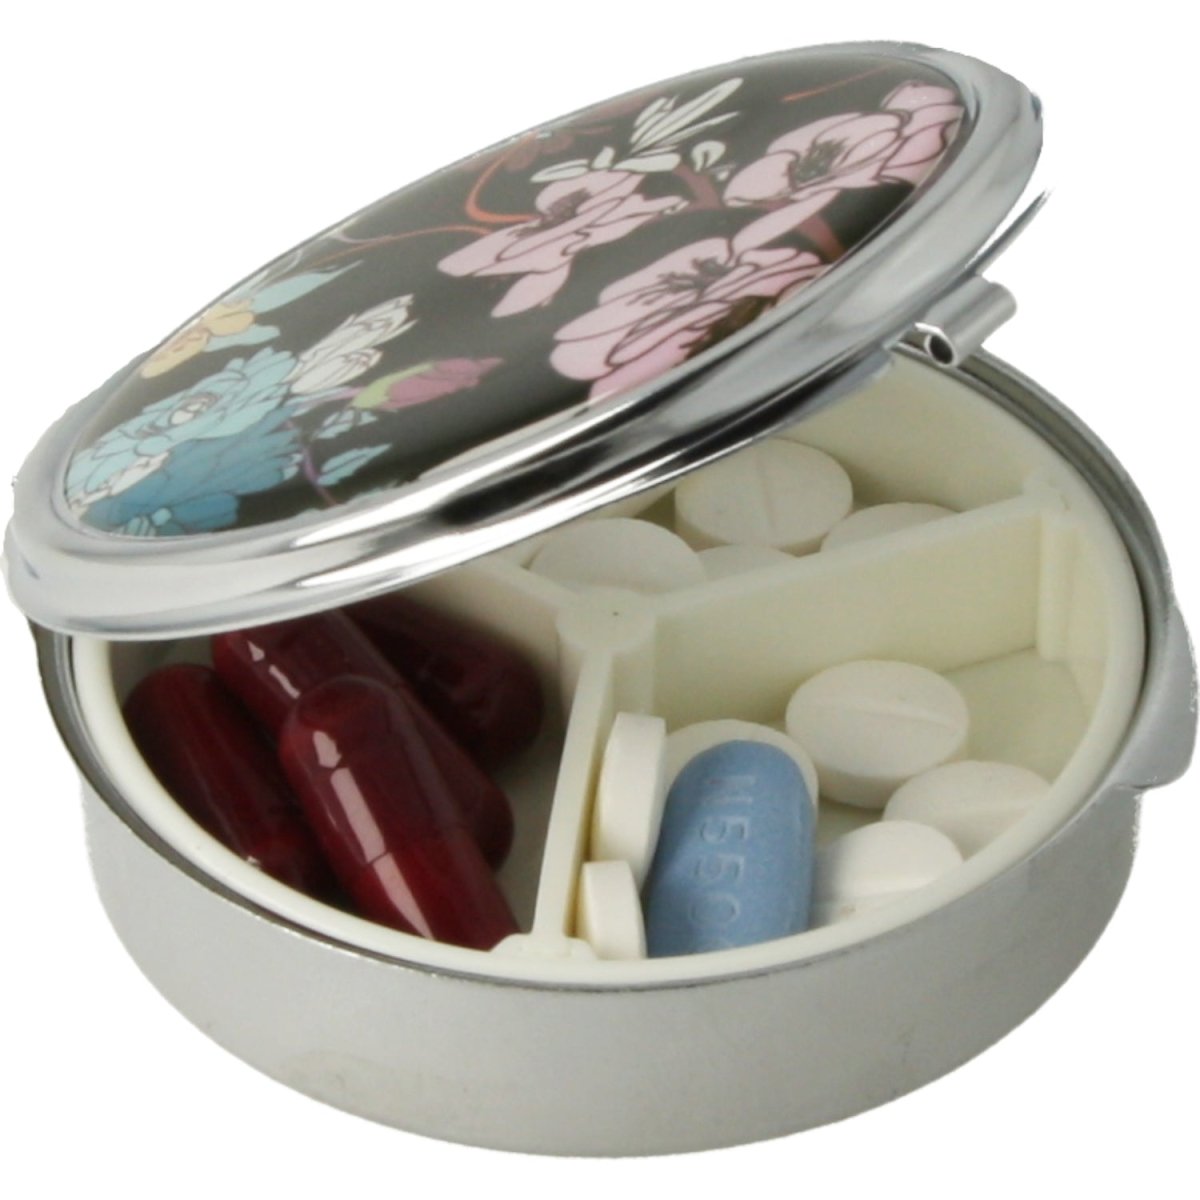 Pastillero pequeño diario bolsillo - 3 compartimentos - Organizador de pastillas pill box estuche redondo - (Negro) - movilcom.com